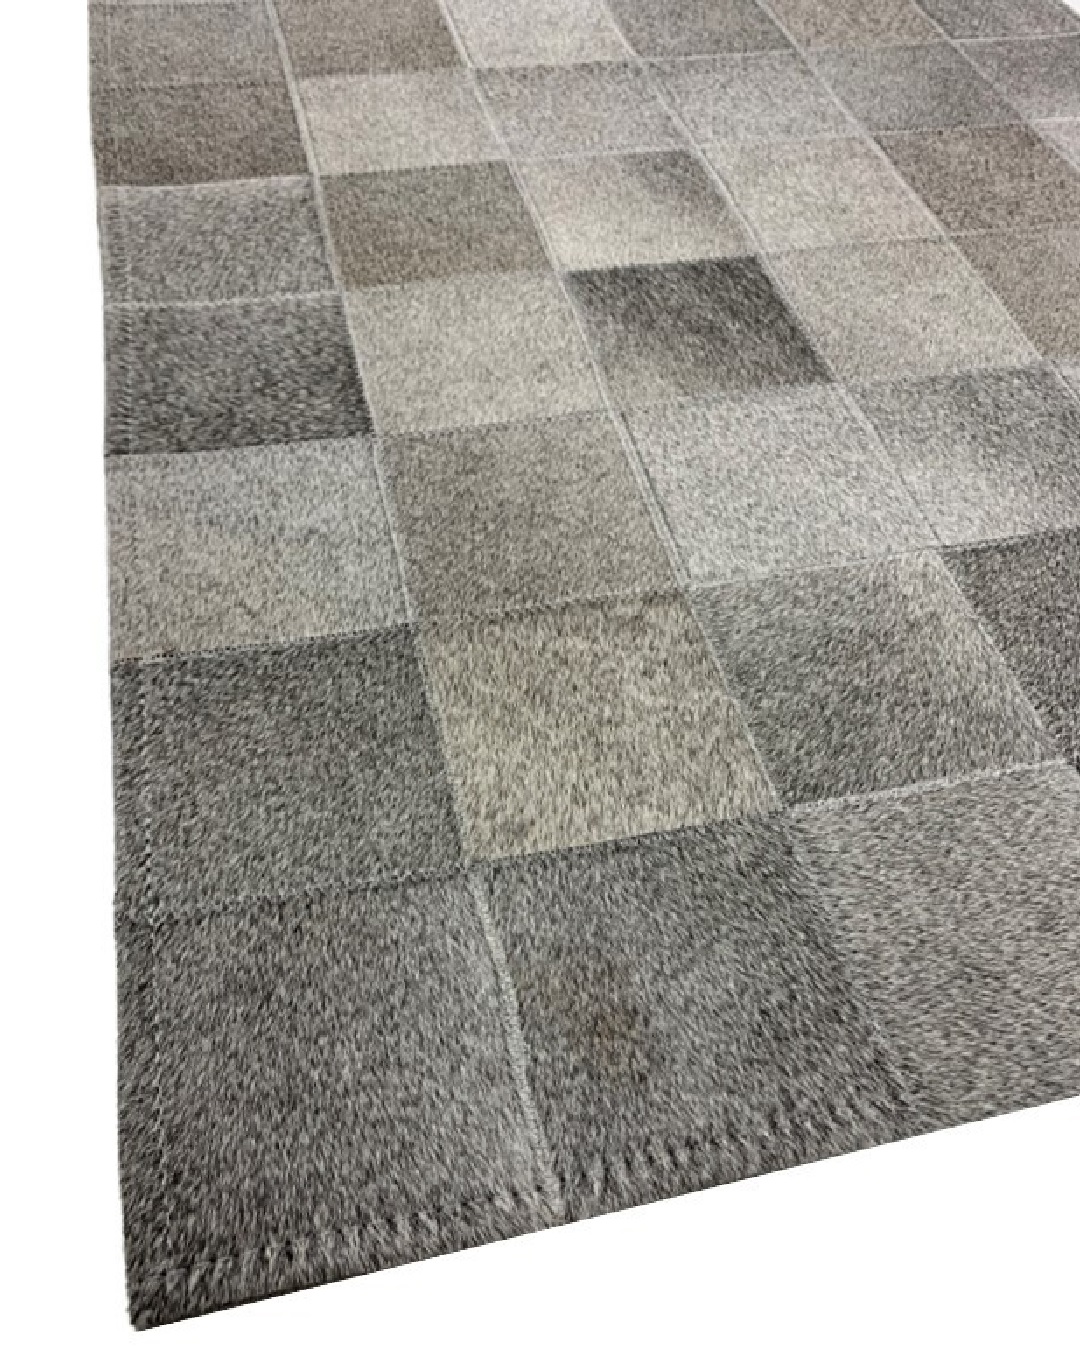 Cowhide patchwork rug grey gris